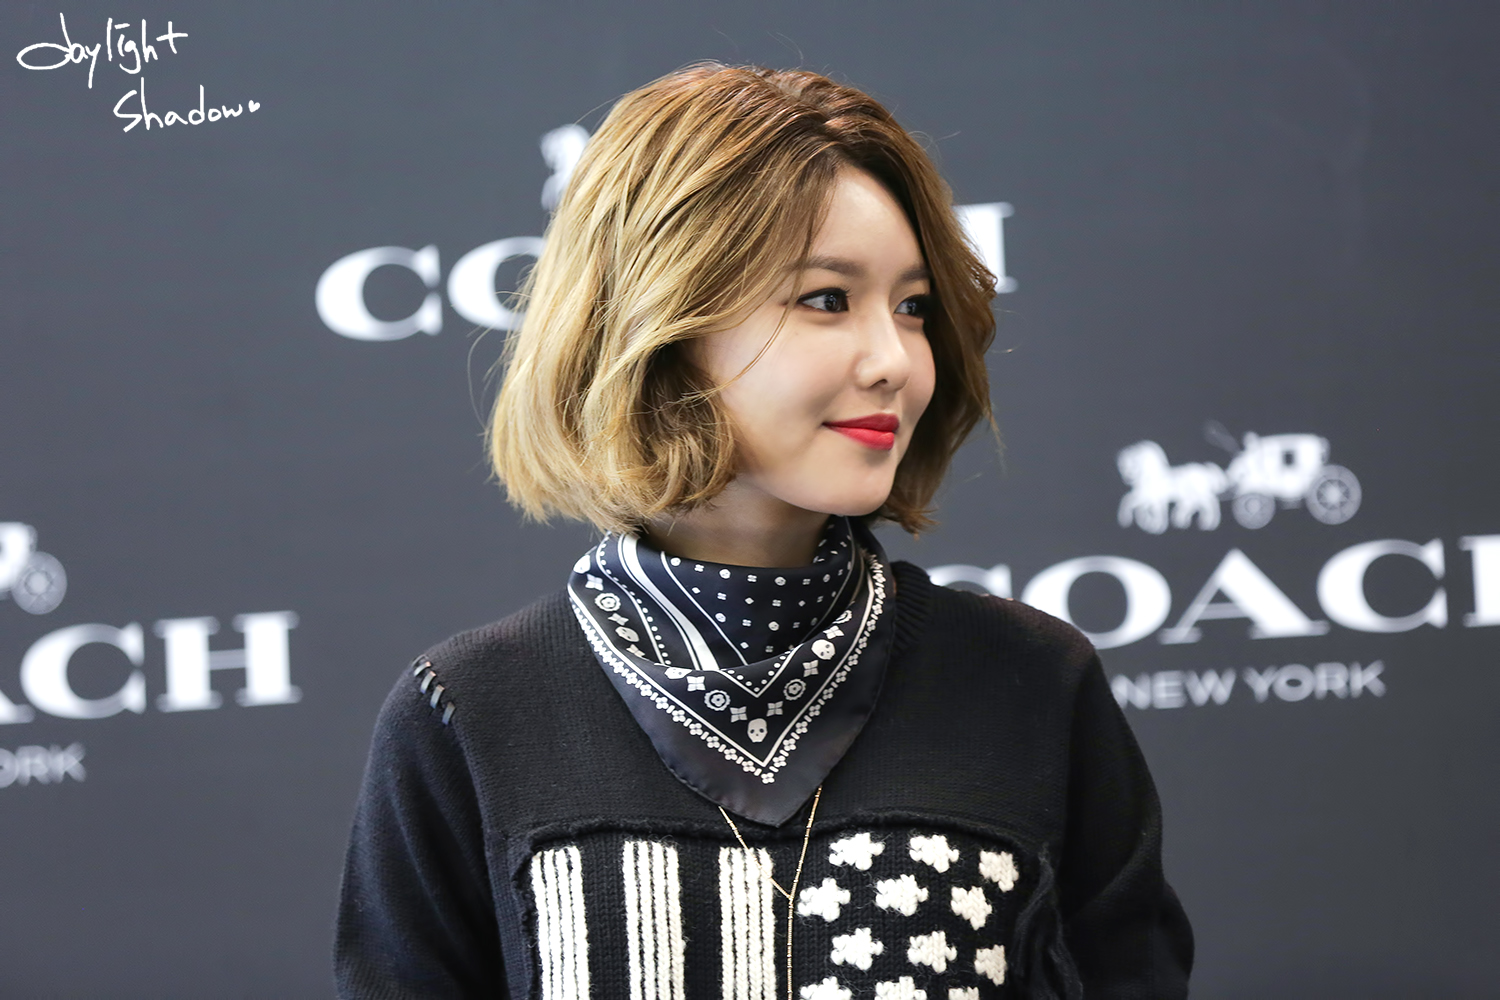  [PIC][27-11-2015]SooYoung tham dự buổi Fansign cho thương hiệu "COACH" tại Lotte Department Store Busan vào trưa nay - Page 2 2707BB4156AB7C431D6A01